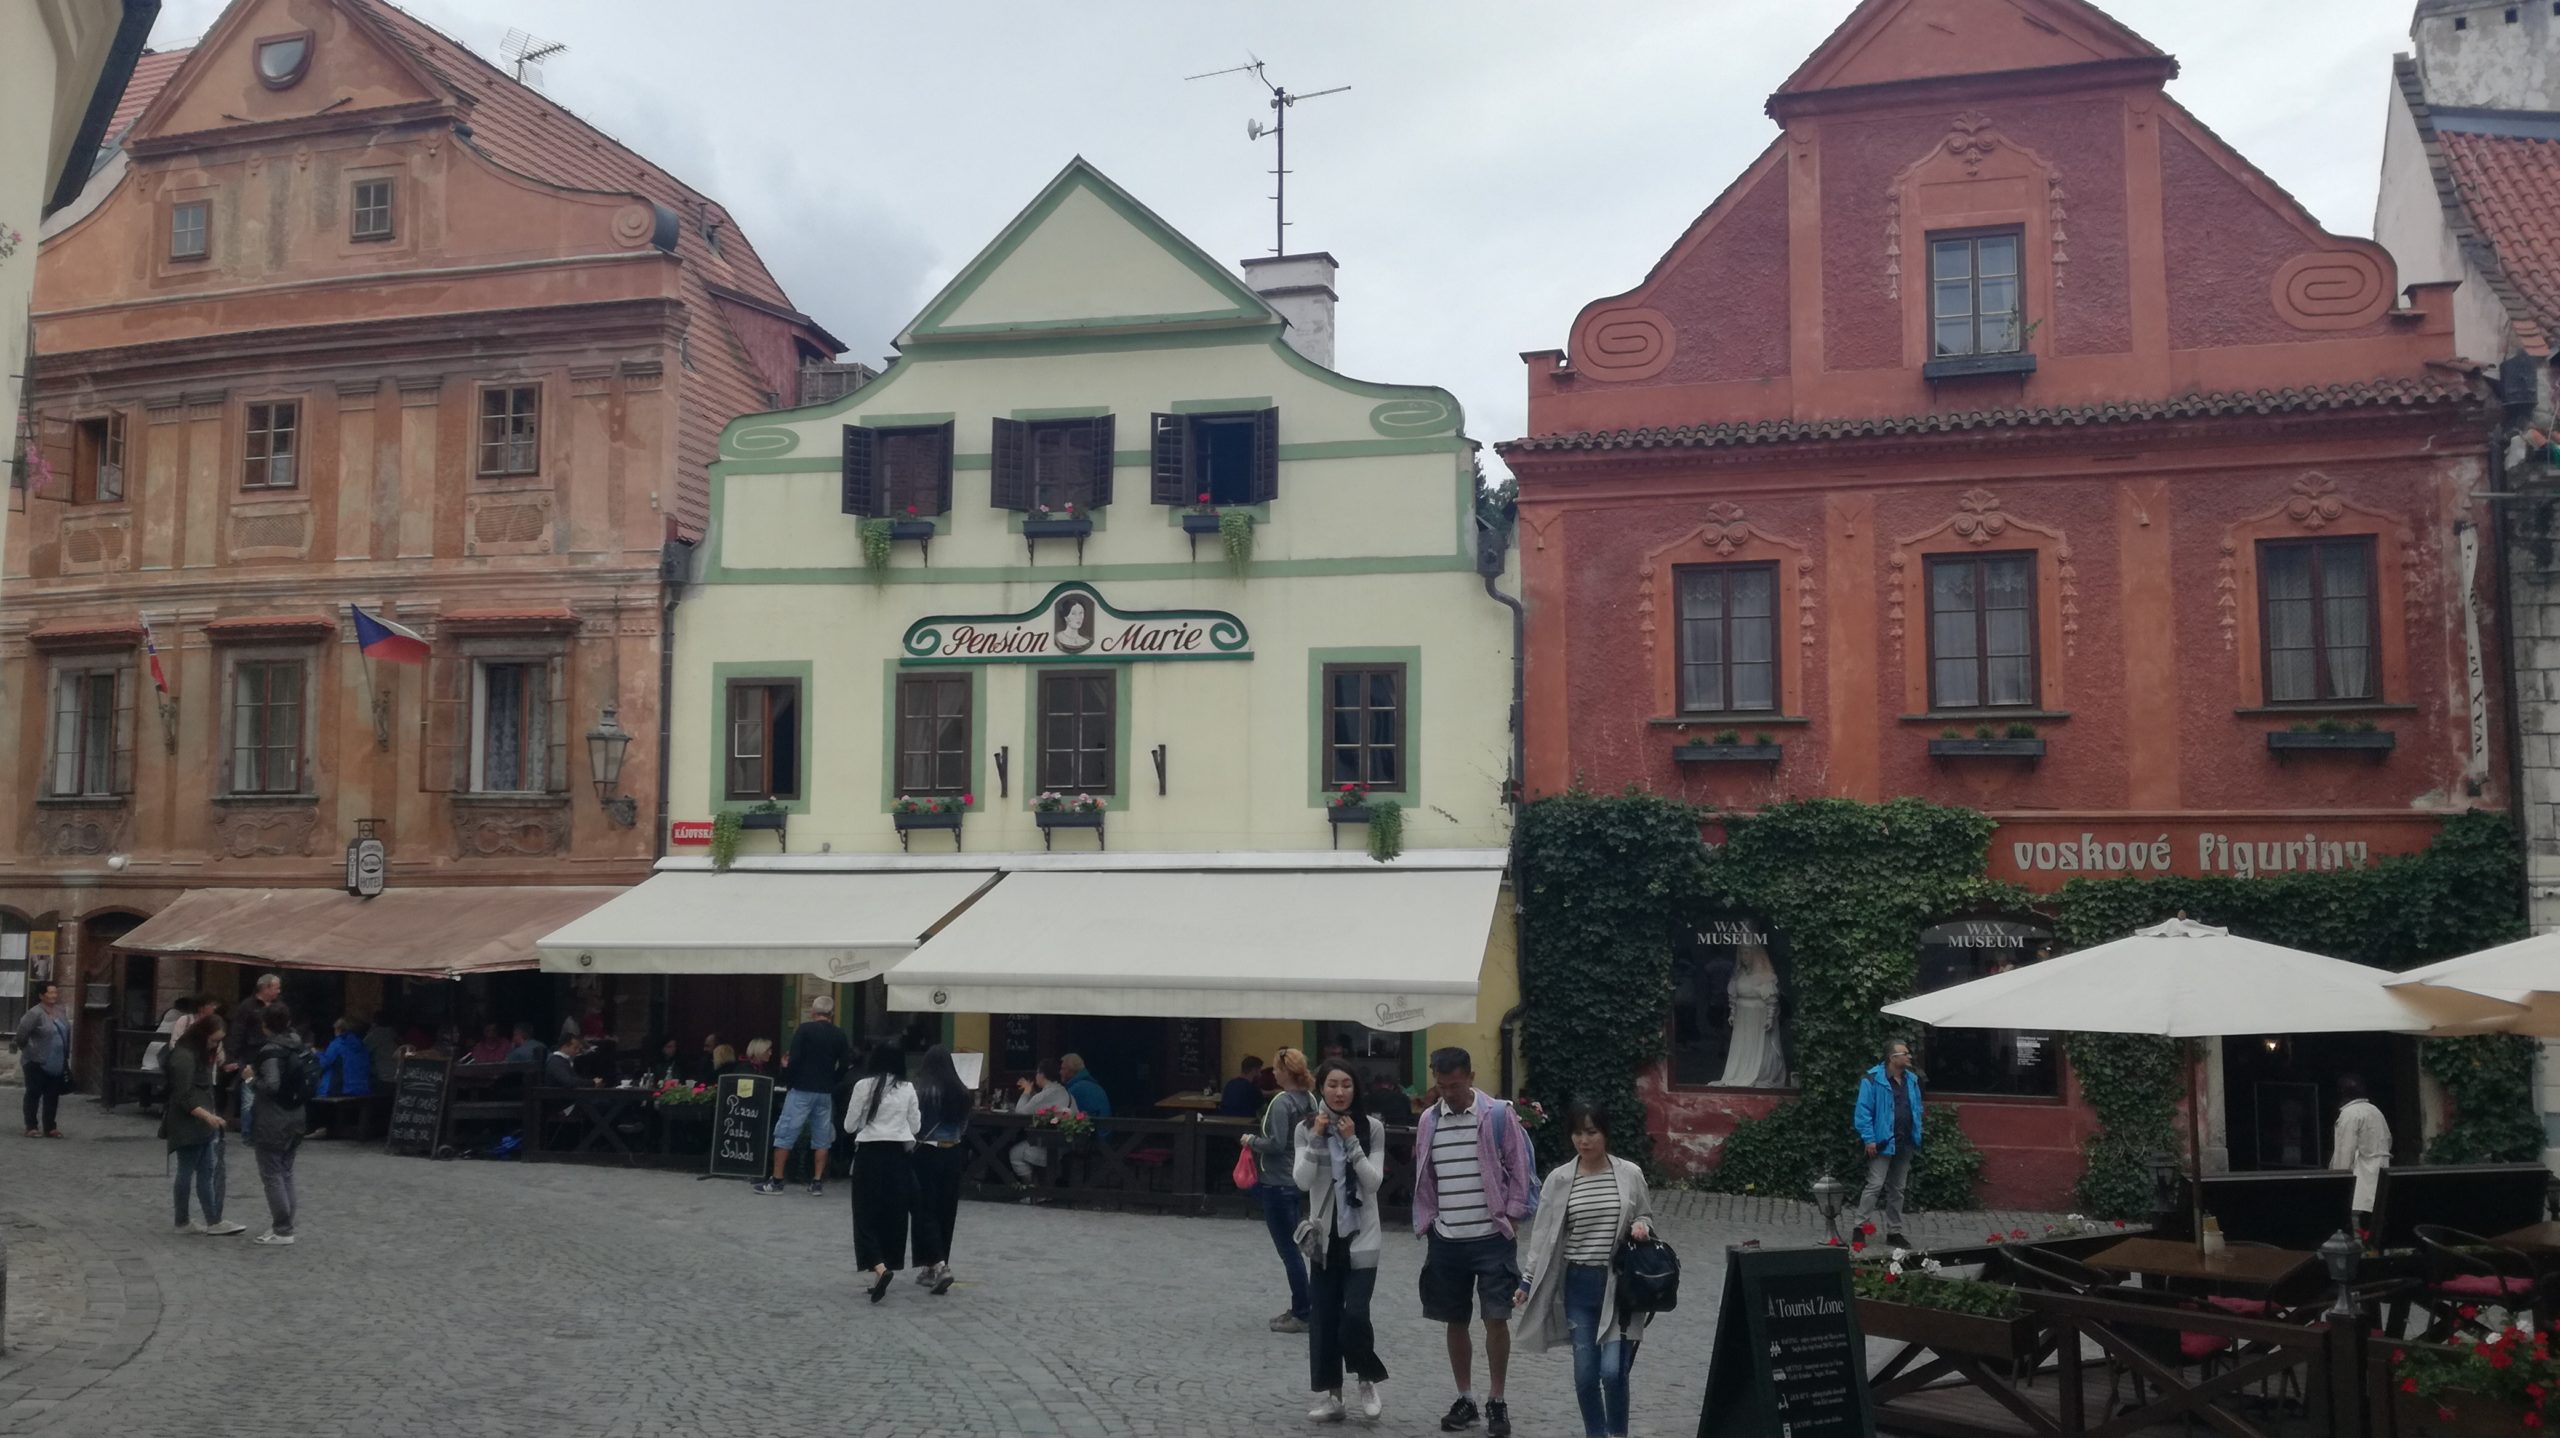 Ofertas de Viajes a Praga: Qué visitar en los alrededores de Praga